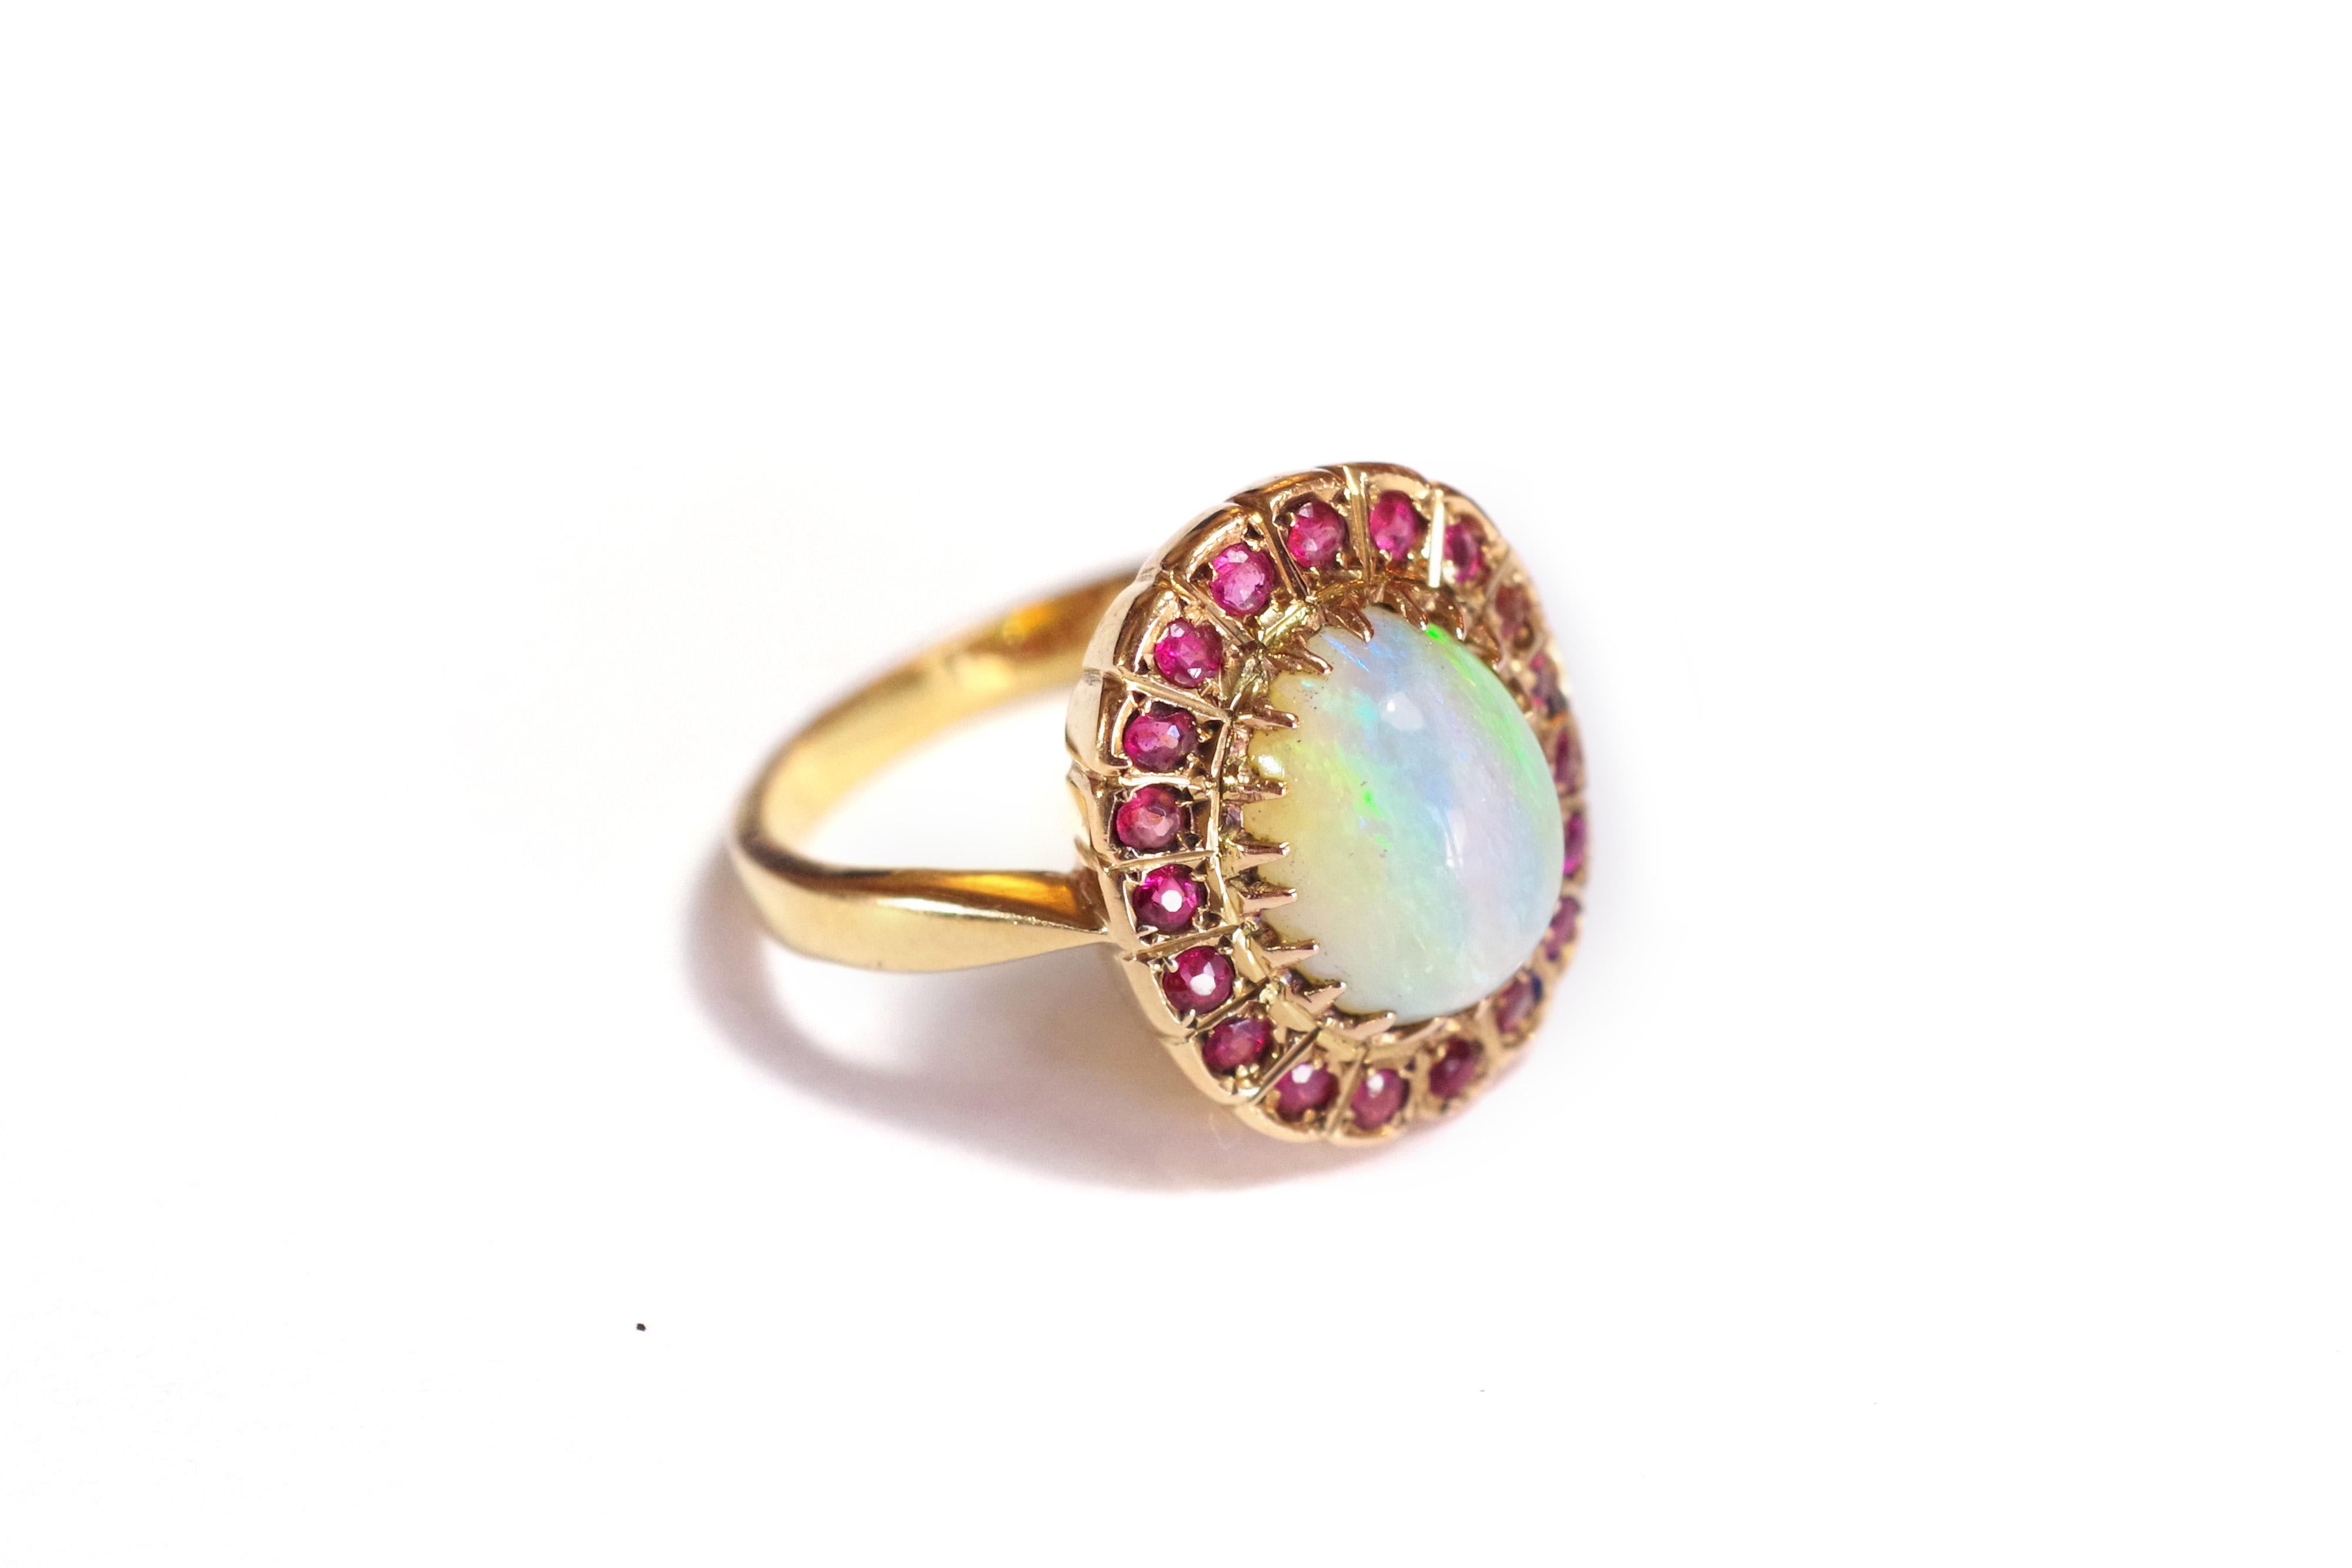 Opal and Garnet Cluster Ring in 18k Gold, Vintage Cluster Ring For Sale ...